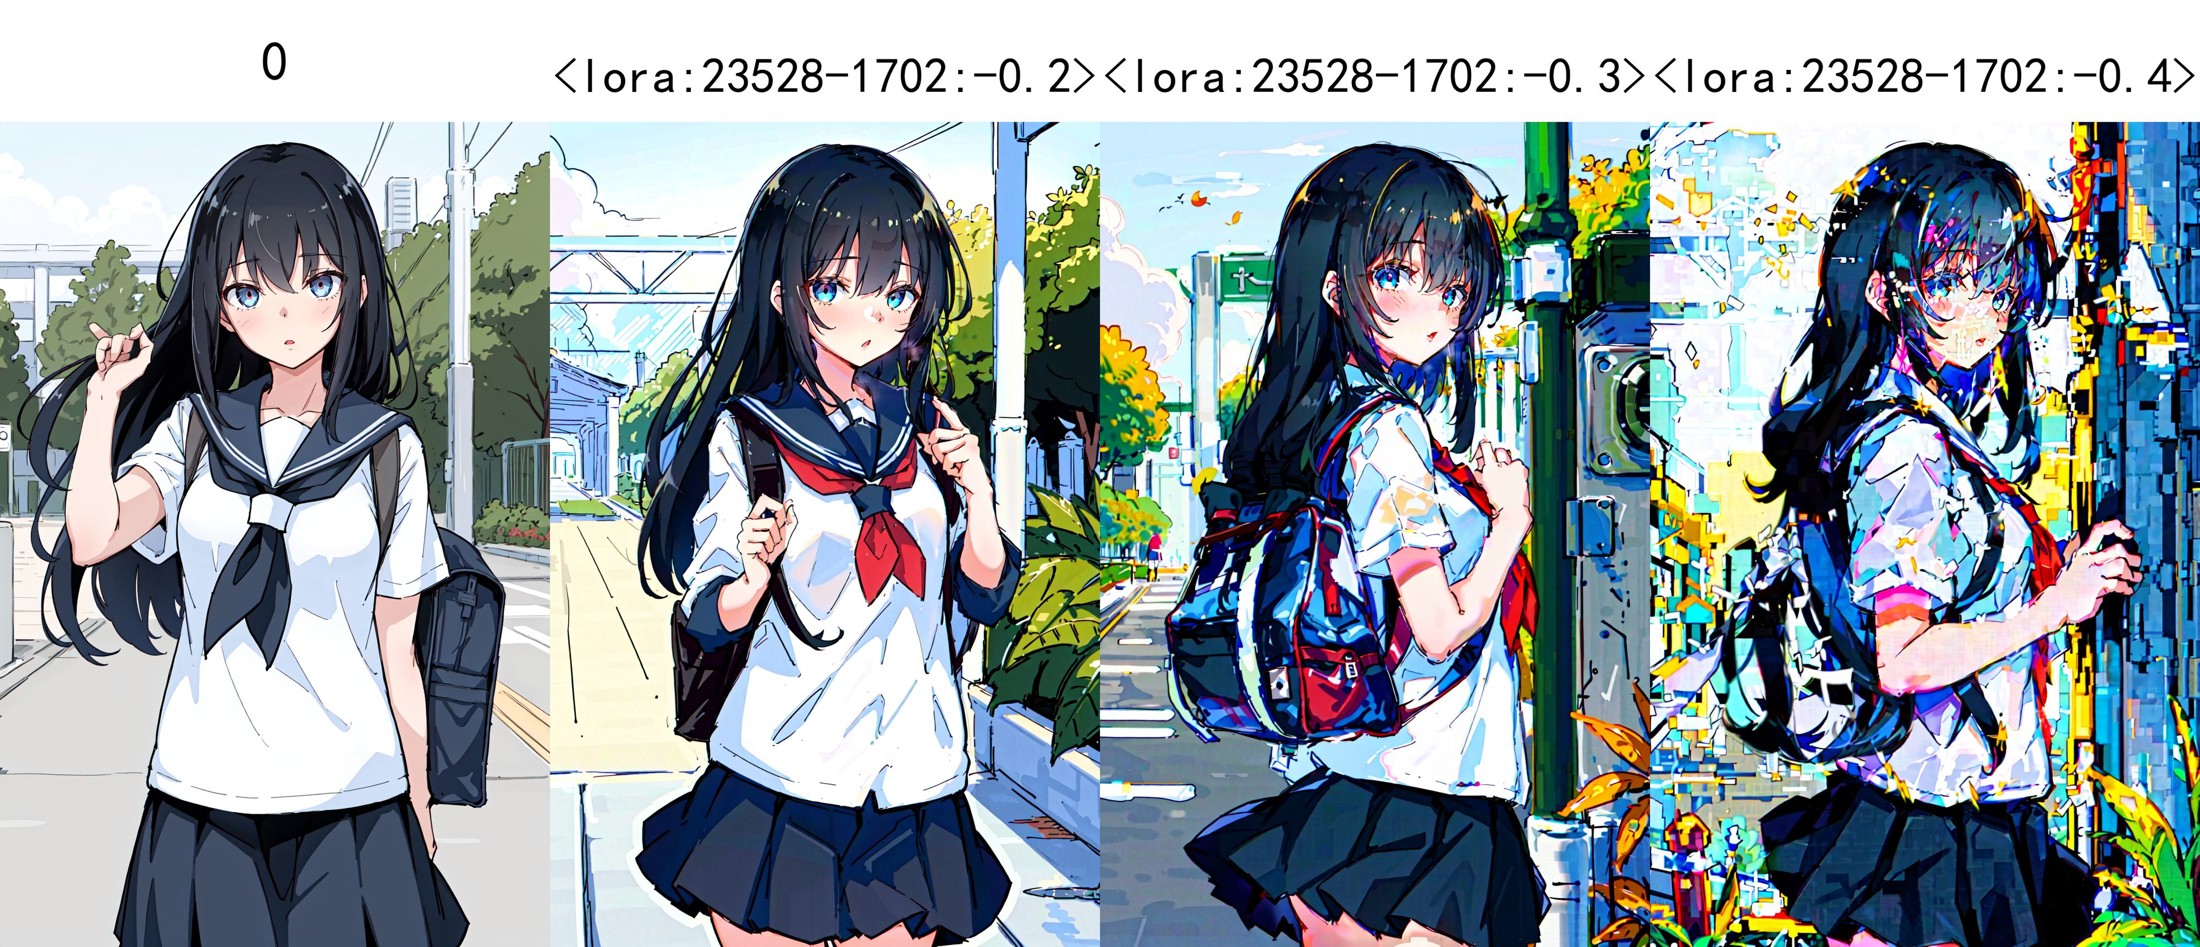 1girl,Black hair,Long hair,Backpack,school uniform,School gate,leaves,Windy,0,